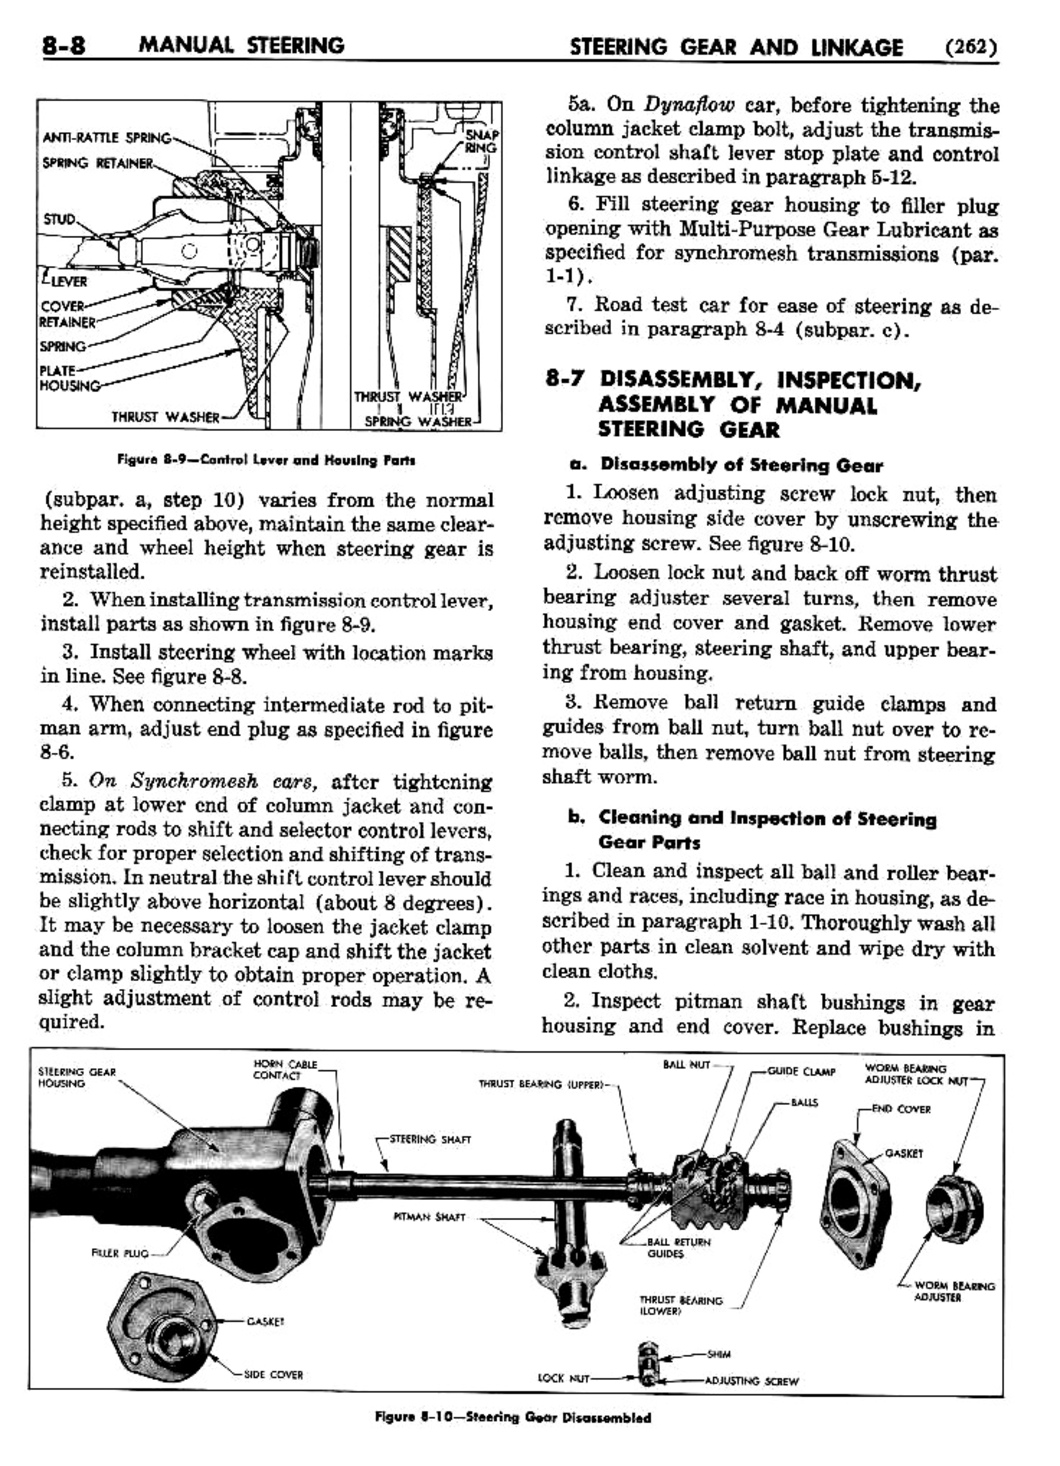 n_09 1954 Buick Shop Manual - Steering-008-008.jpg